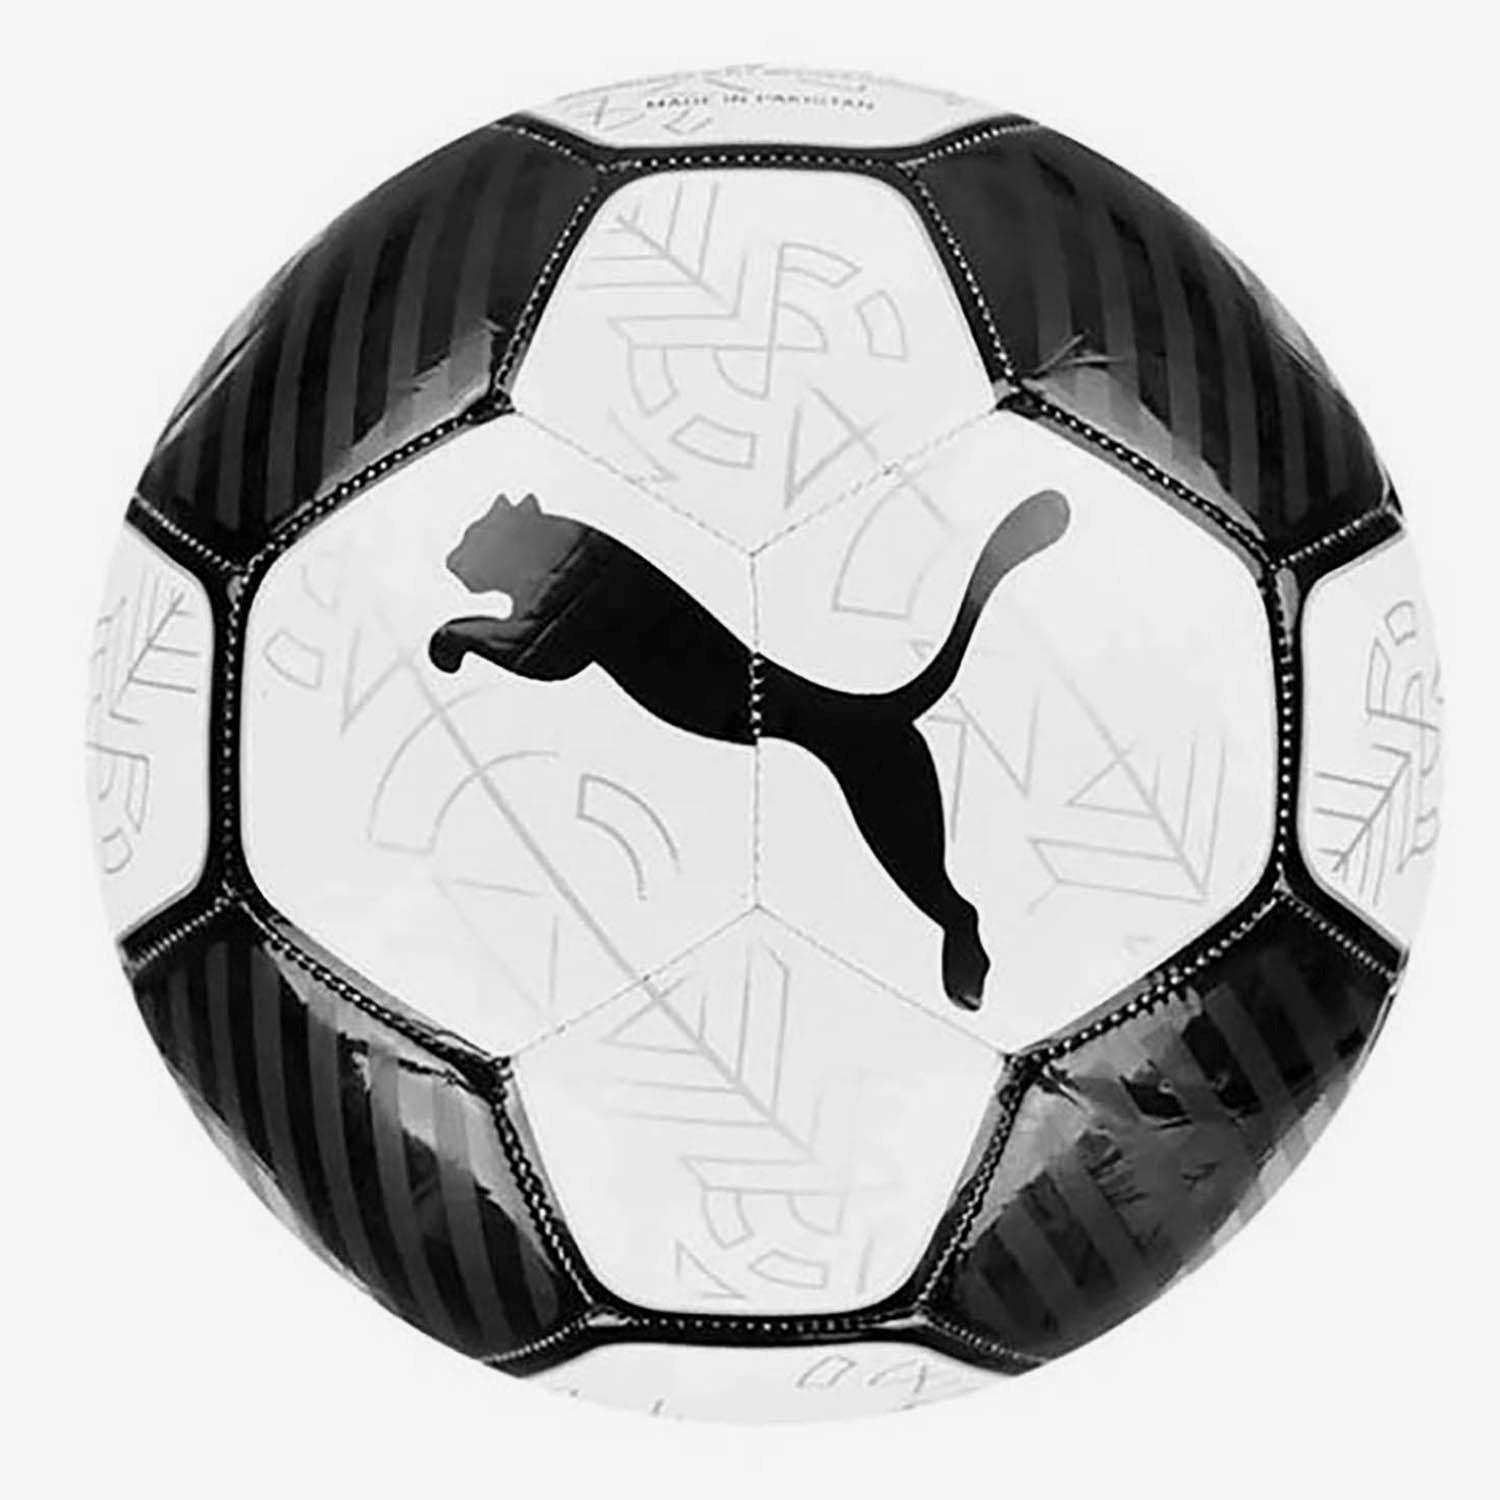 Club Series: Bola Futebol SELECT Team (FIFA BASIC)